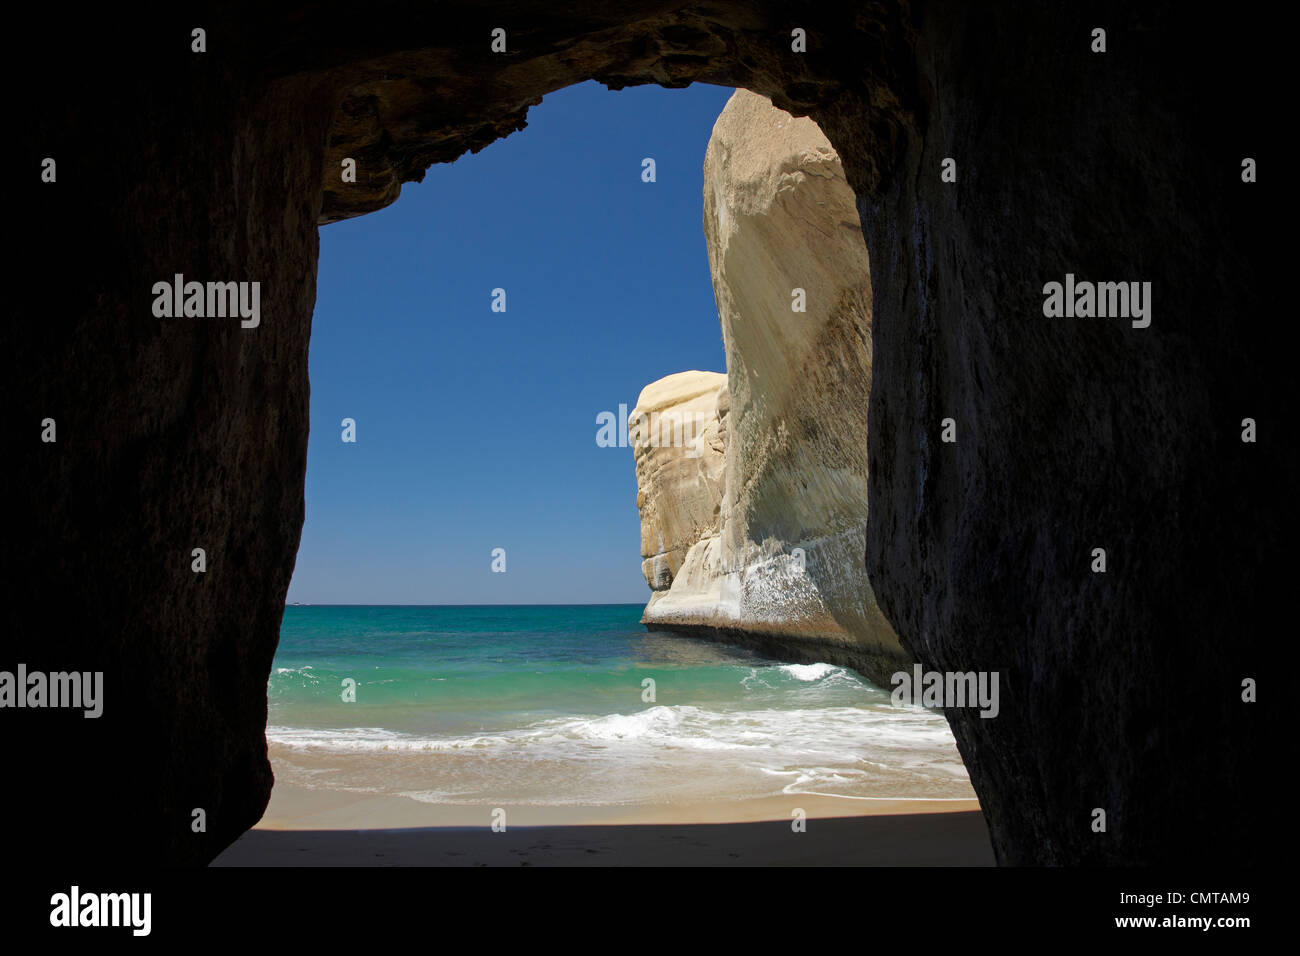 Grotte de la mer, plage et falaises, plage de Tunnel, Dunedin, île du Sud, Nouvelle-Zélande Banque D'Images